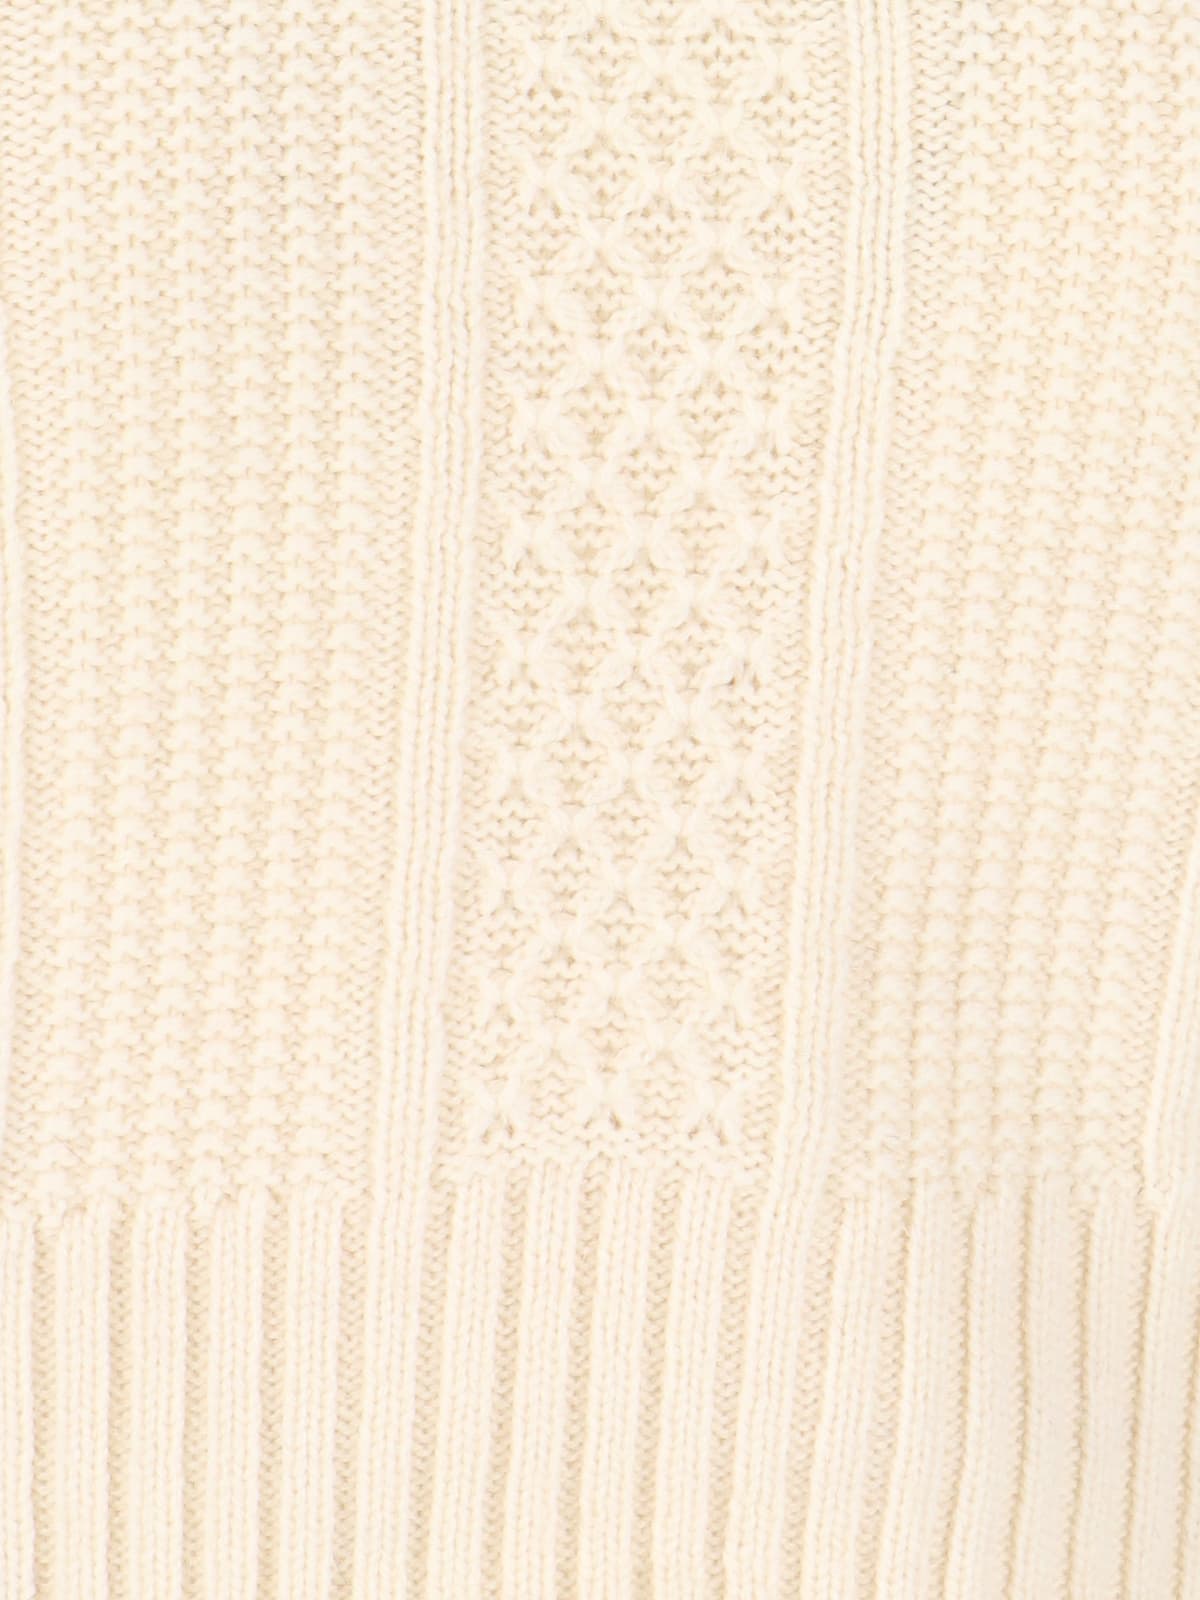 Shop Golden Goose Crystal Crop Sweater In Cream